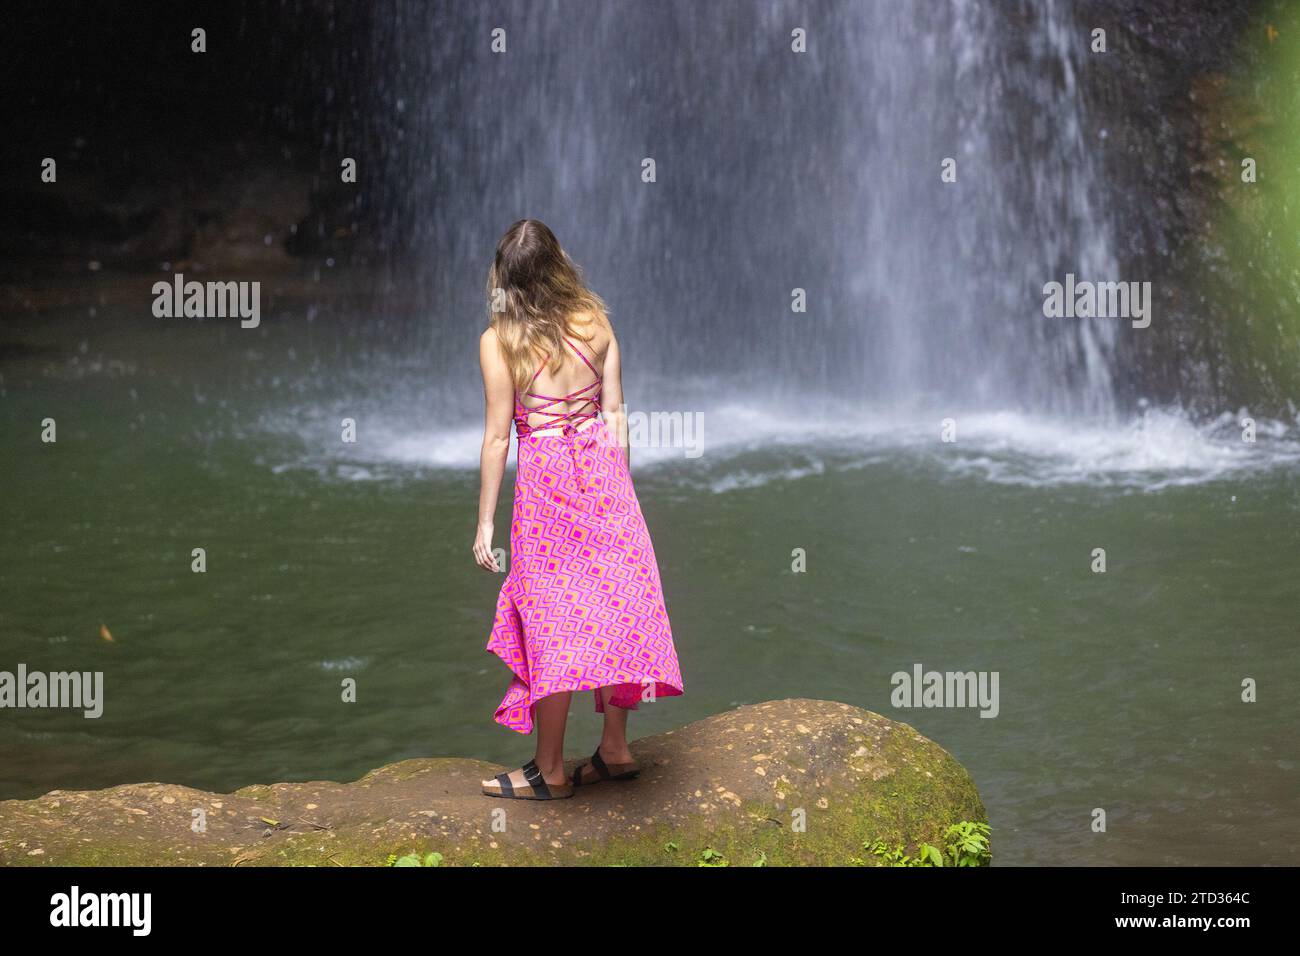 Eine junge Frau in einem rosa Kleid am Wasserfall Leke Leke in einem üppigen tropischen Wald, Bali, Indonesien Stockfoto